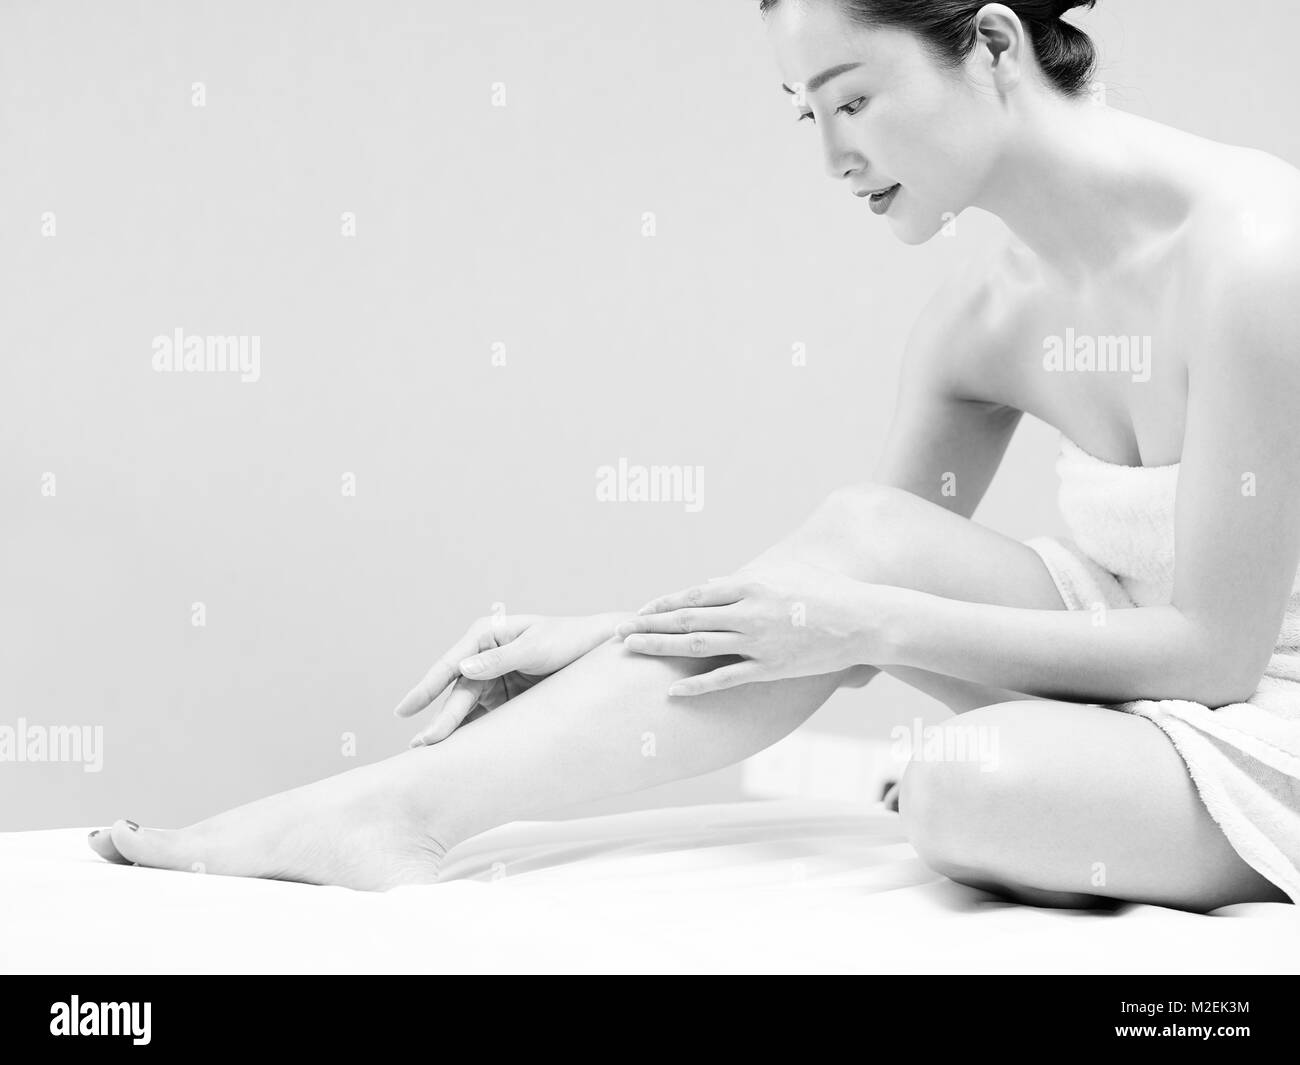 Belle jeune femme asiatique avec peau douce enveloppée dans une serviette blanche assis sur le lit d'appliquer une lotion pour le corps, noir et blanc. Banque D'Images